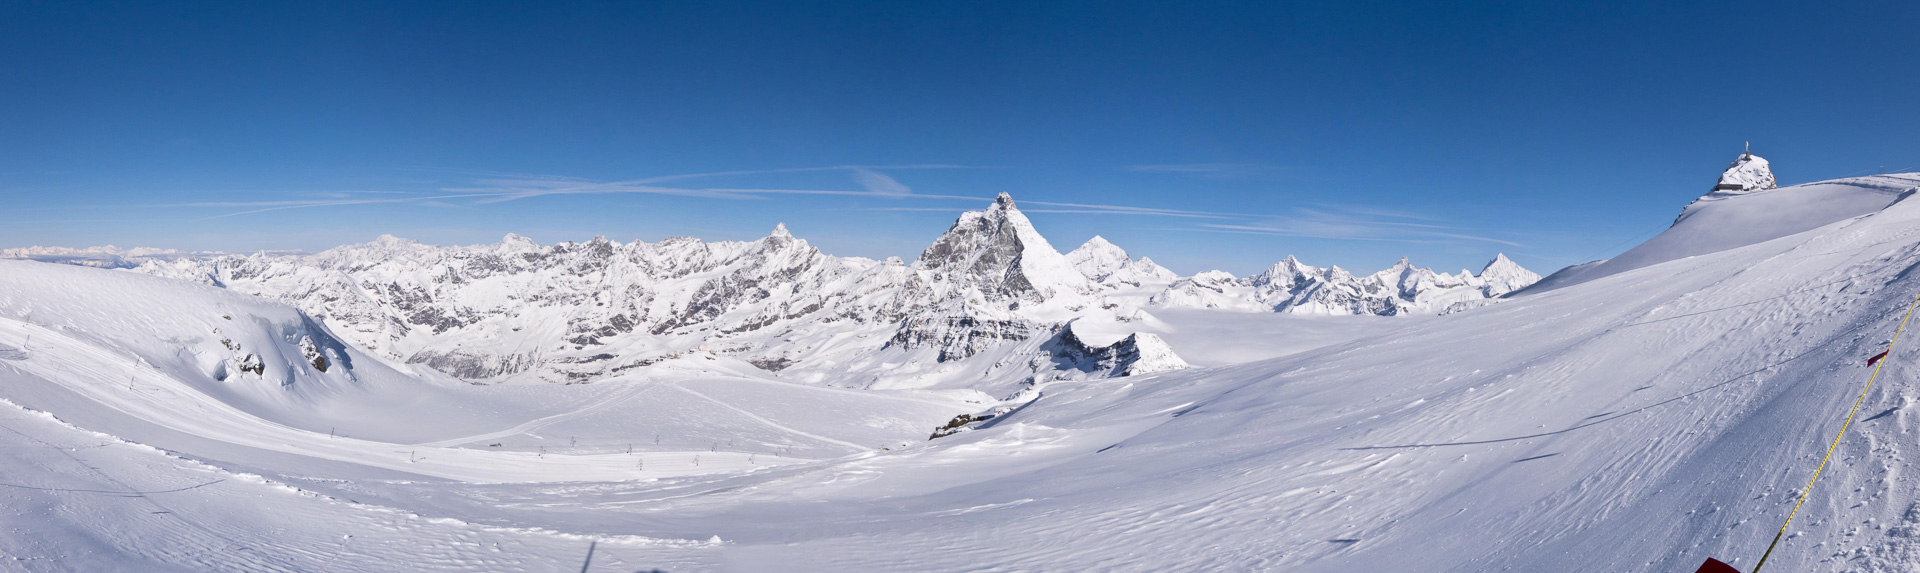 Blick ins Skigebiet in traumhafter Kulisse mit Mont Blanc, Matterhorn und Weisshorn.